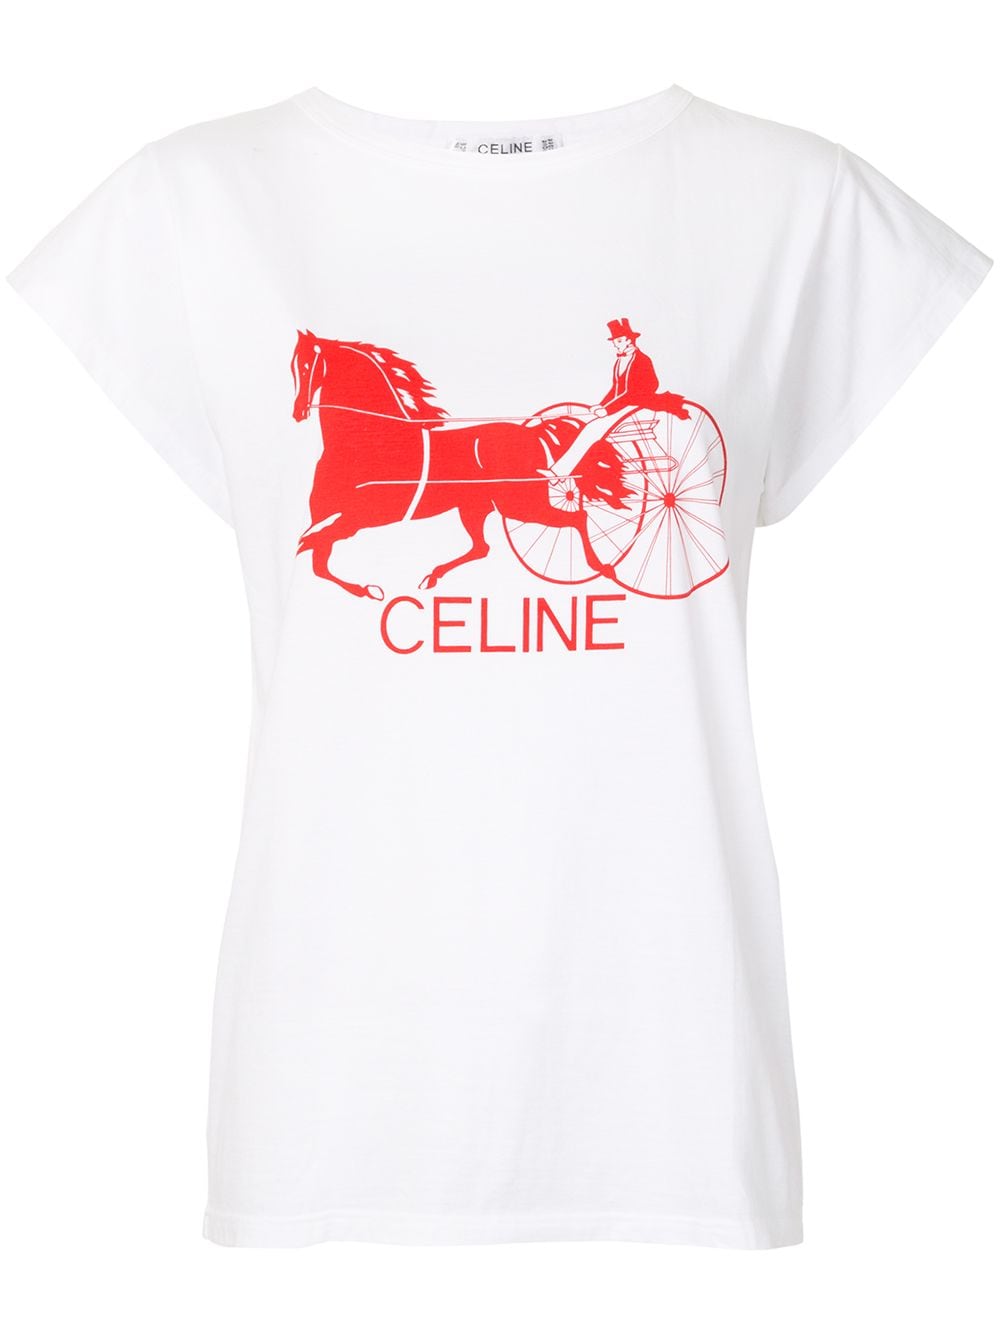 Celine Paris T-Shirt  Paris t shirt, Tops women blouses, Unique women tops